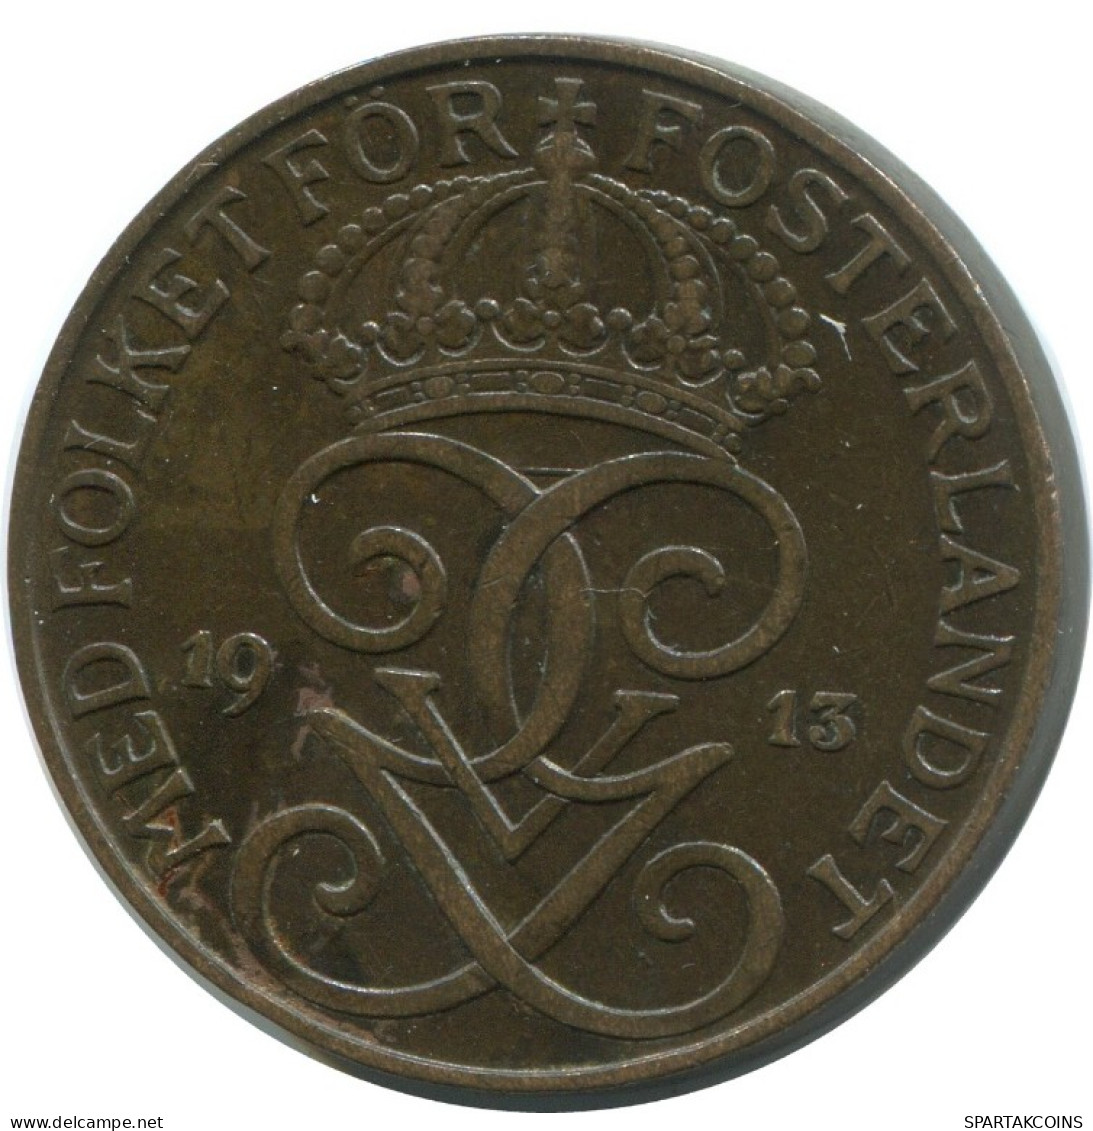 5 ORE 1913 SWEDEN Coin #AC461.2.U.A - Svezia